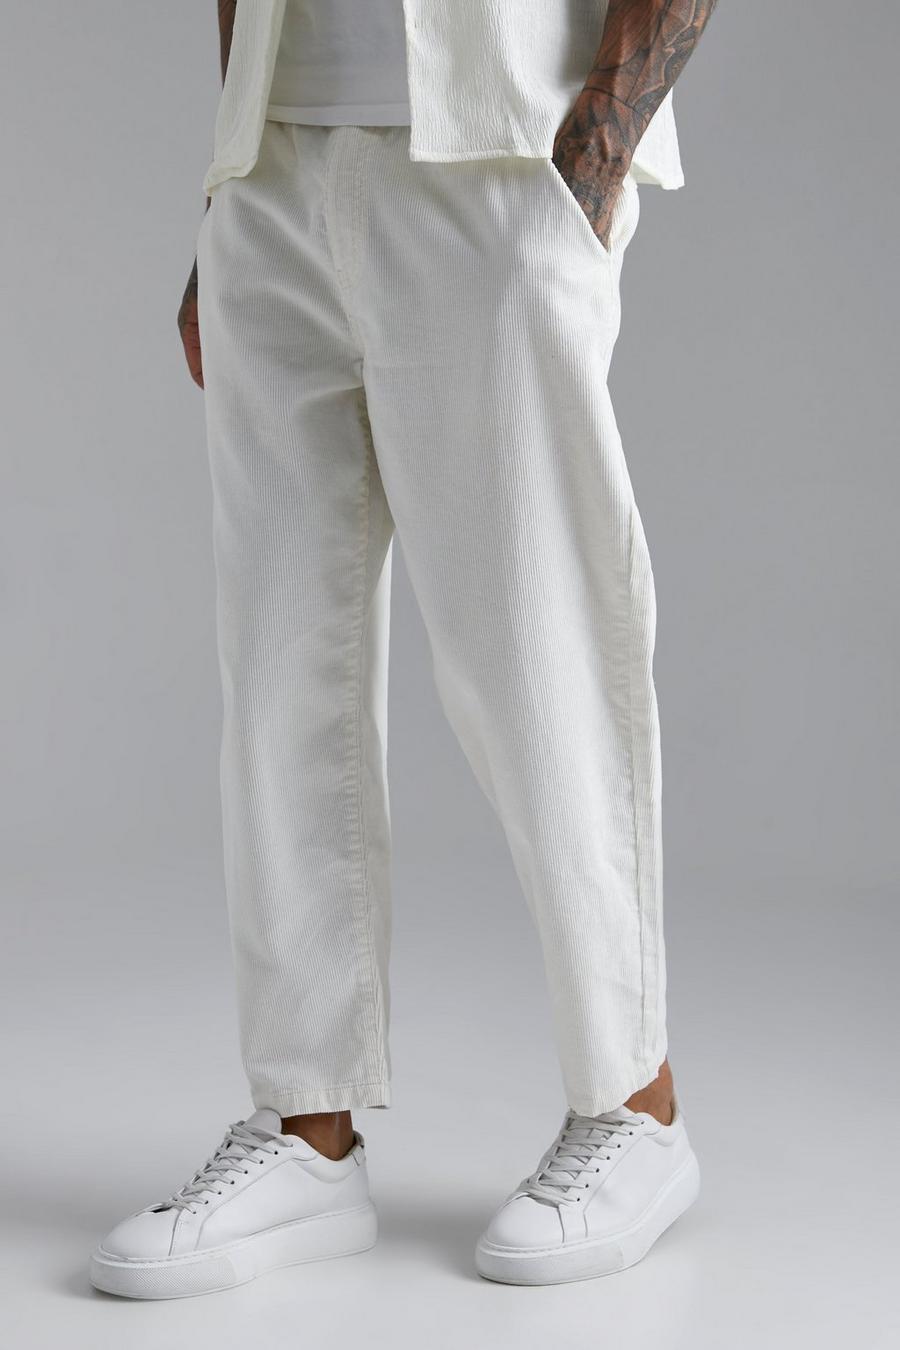 Pantaloni stile Skater in velluto a coste con vita elasticizzata, Ecru bianco